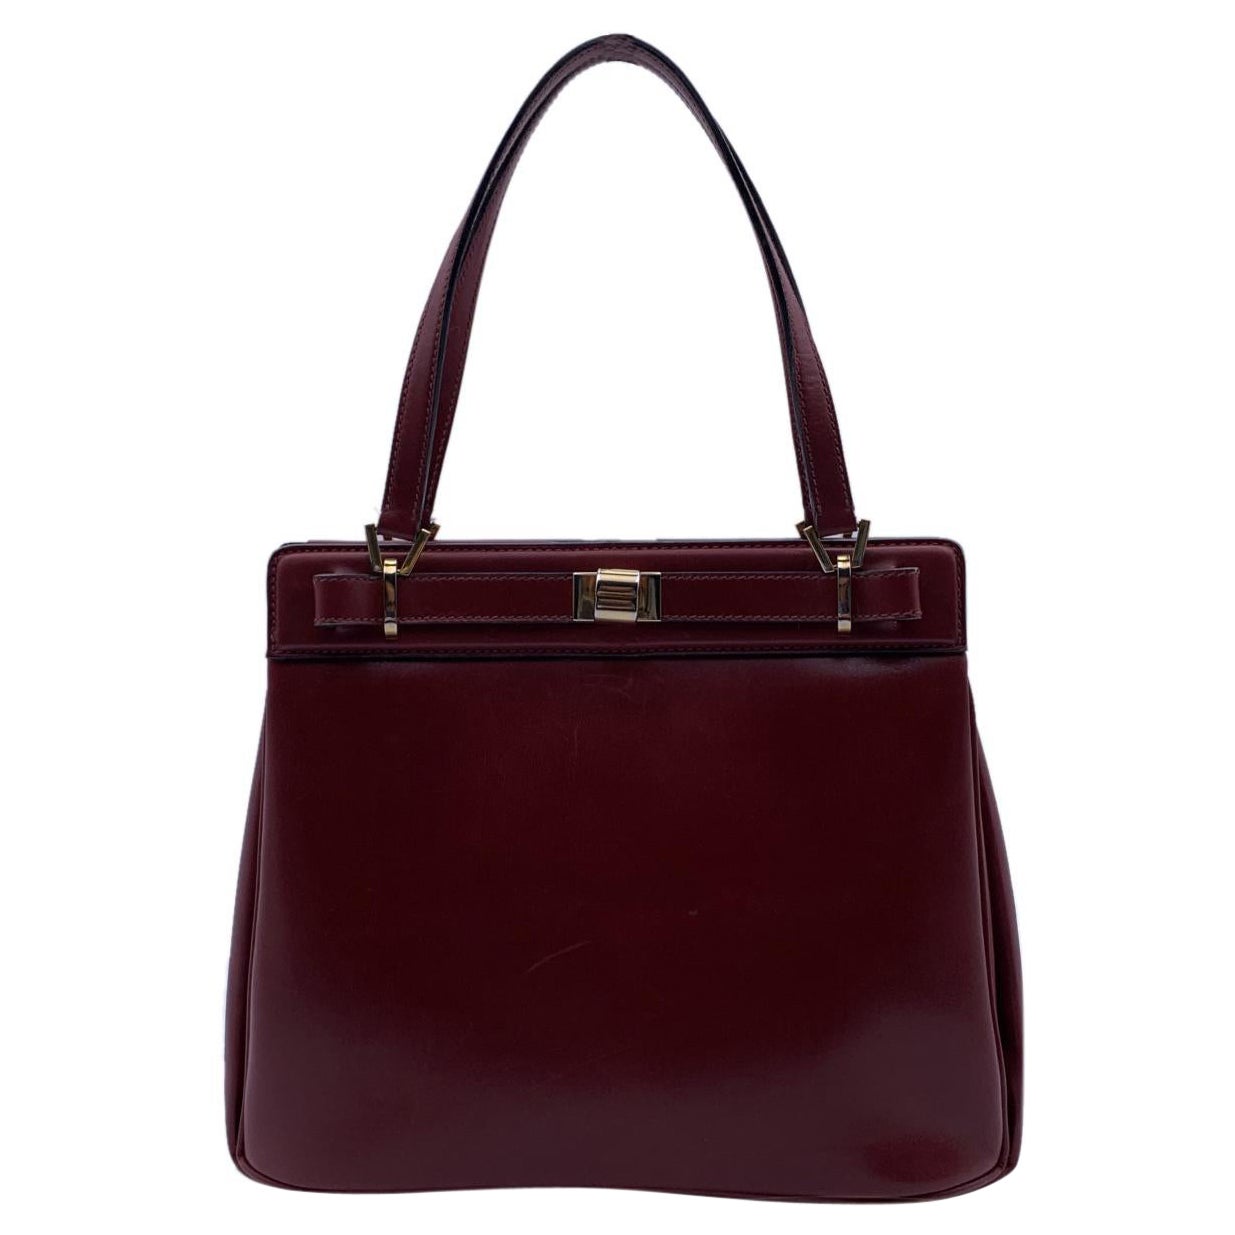 Gucci Vintage Burgundy Leather Handbag Satchel Top Handles Bag